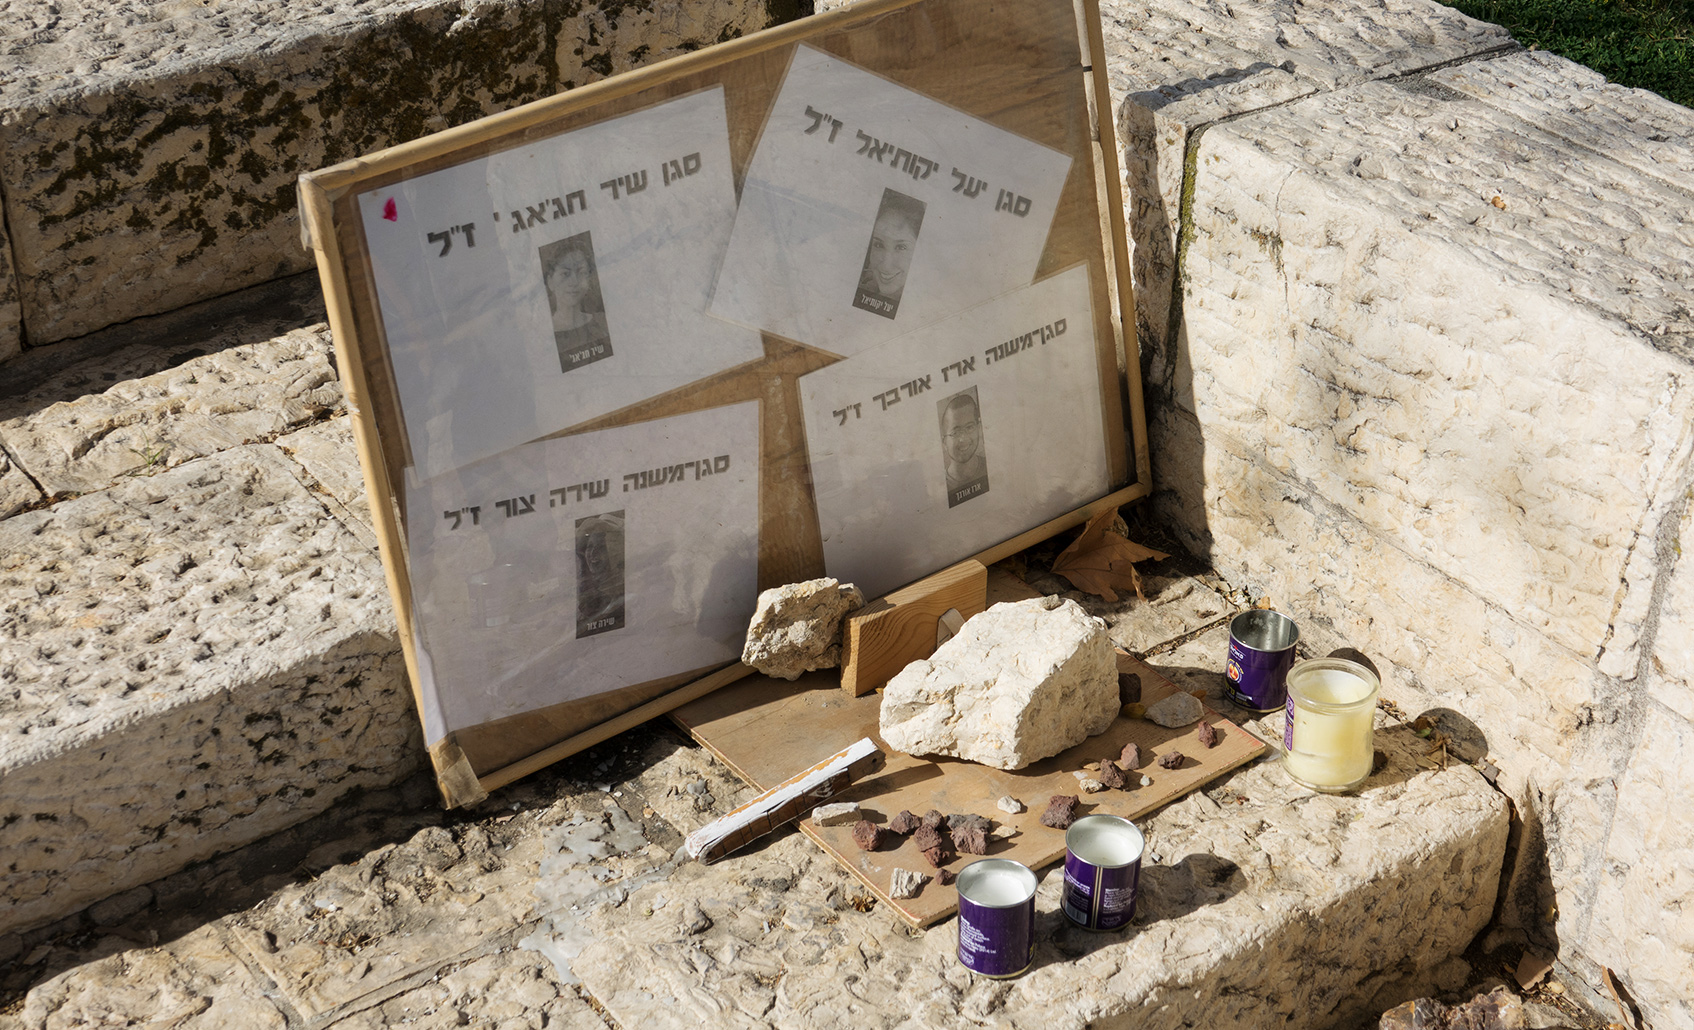 Viele Opfer hat islamistischer Terror bereits in Israel gefordert. Im Januar 2017 starben in Jerusalem an dieser Stelle vier junge Soldaten durch einen LKW-Fahrer, der absichtlich in eine Menschengruppe fuhr. 